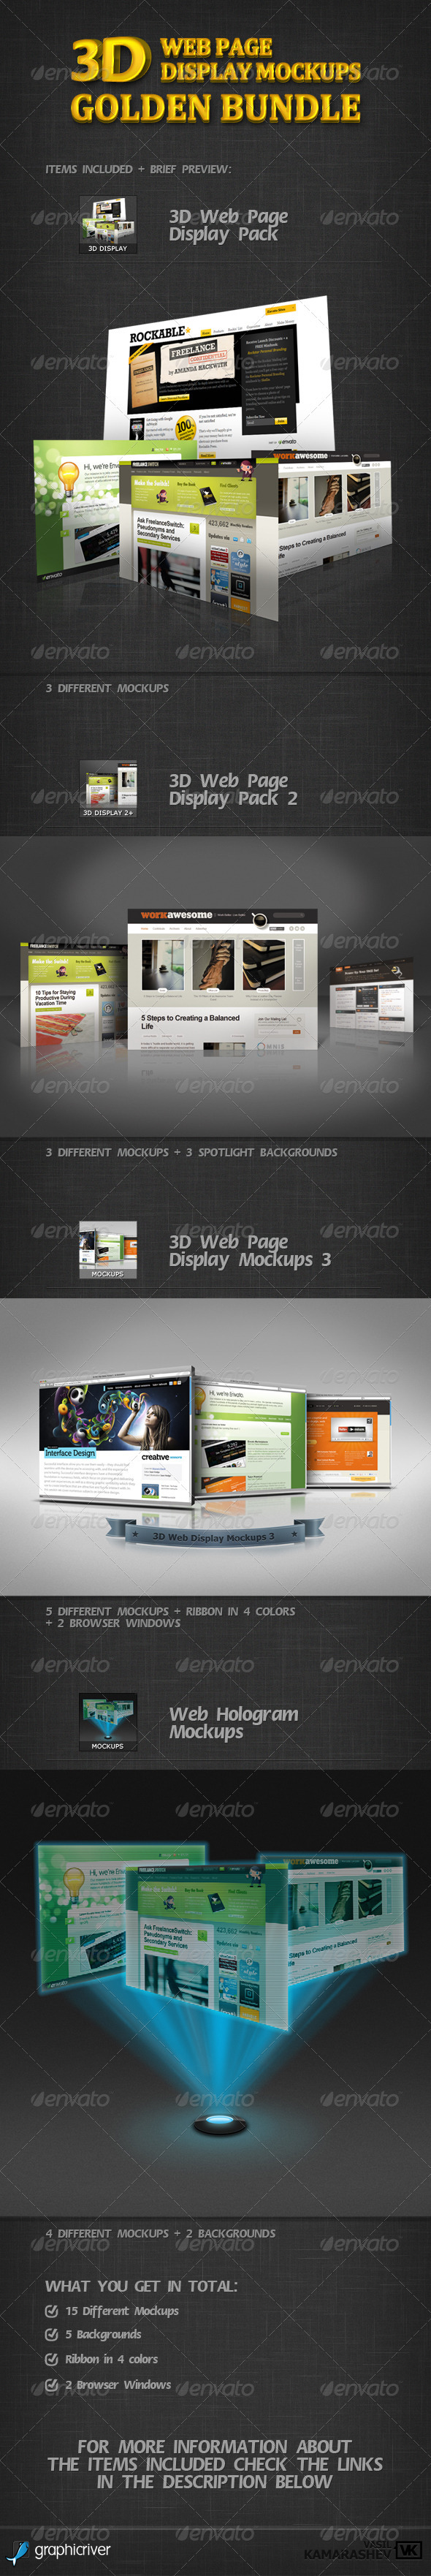 Download 3D Web Page Display Mockups Golden Bundle by kamarashev ...